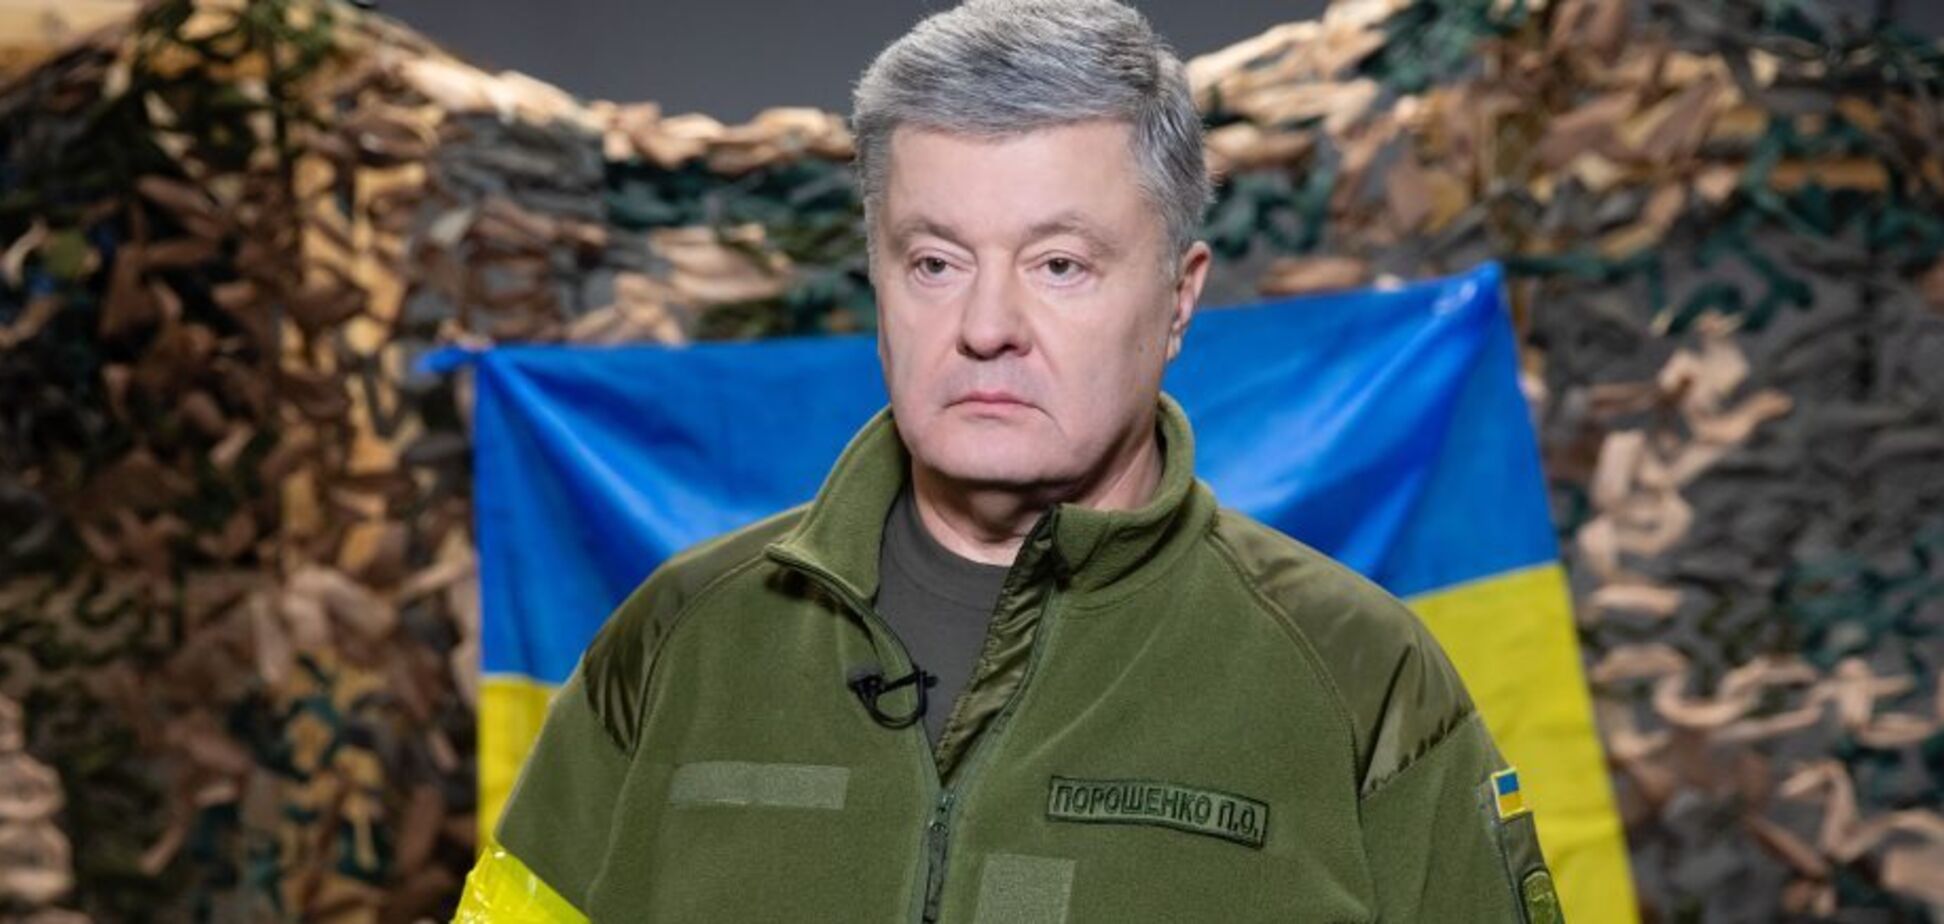 Порошенко: золотовалютные резервы РФ должны быть арестованы, чтобы впоследствии возместить ущерб Украине